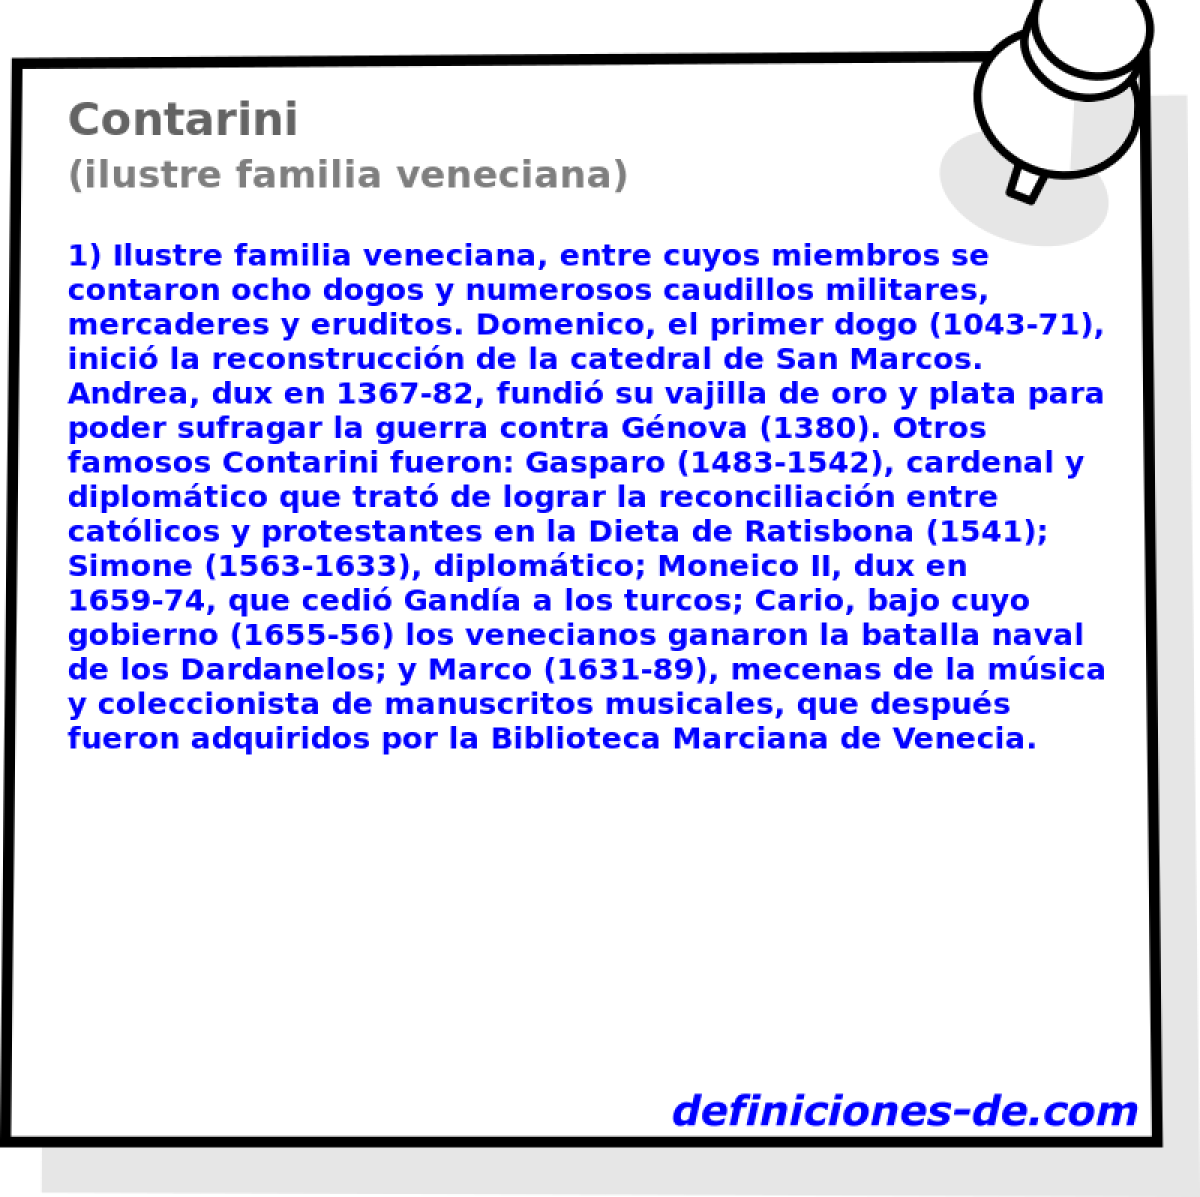 Contarini (ilustre familia veneciana)